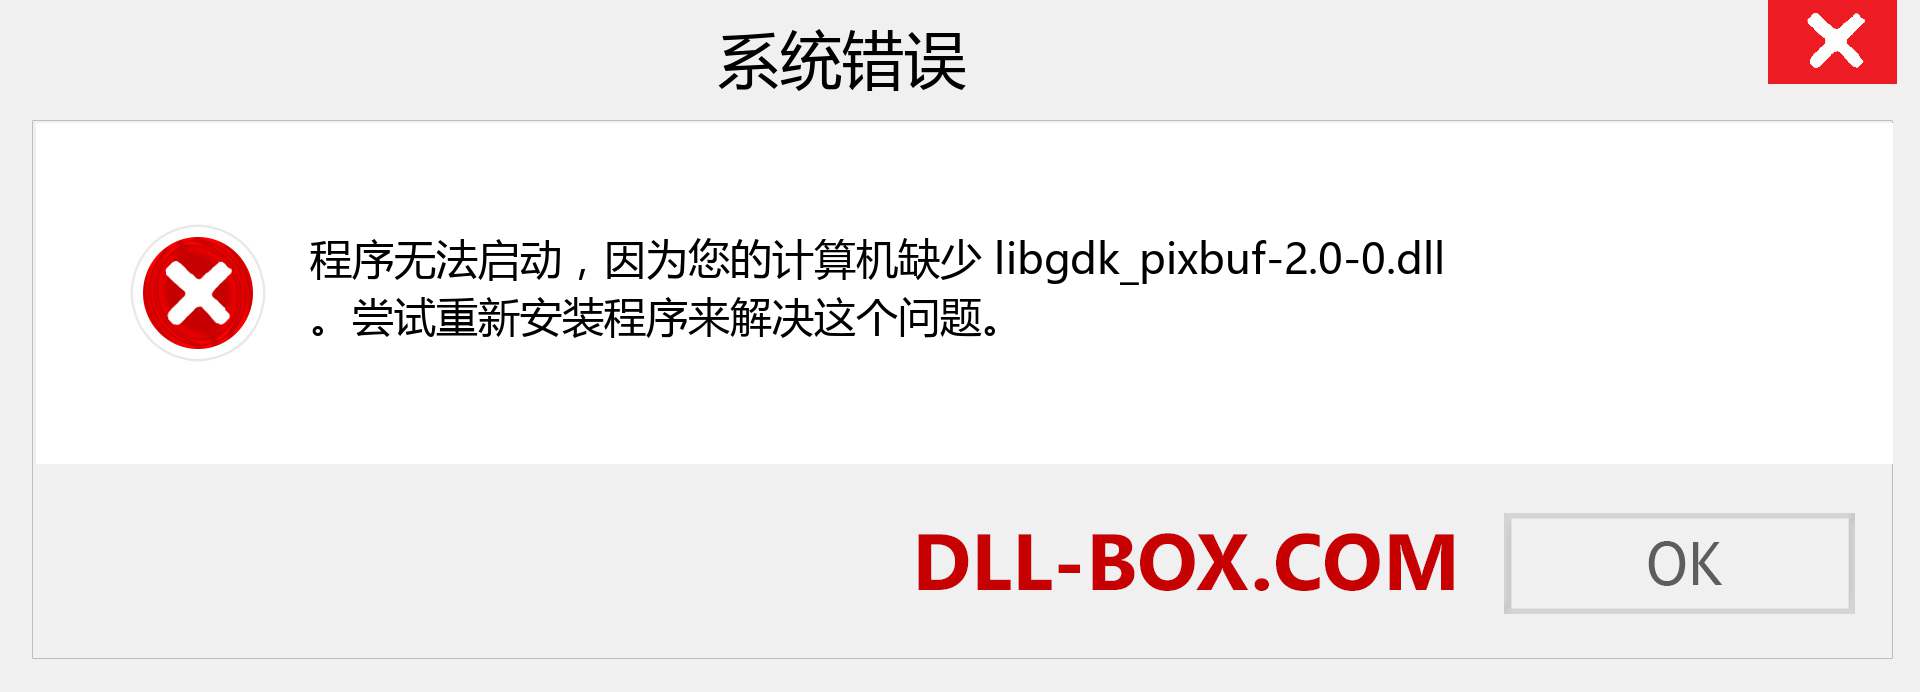 libgdk_pixbuf-2.0-0.dll 文件丢失？。 适用于 Windows 7、8、10 的下载 - 修复 Windows、照片、图像上的 libgdk_pixbuf-2.0-0 dll 丢失错误